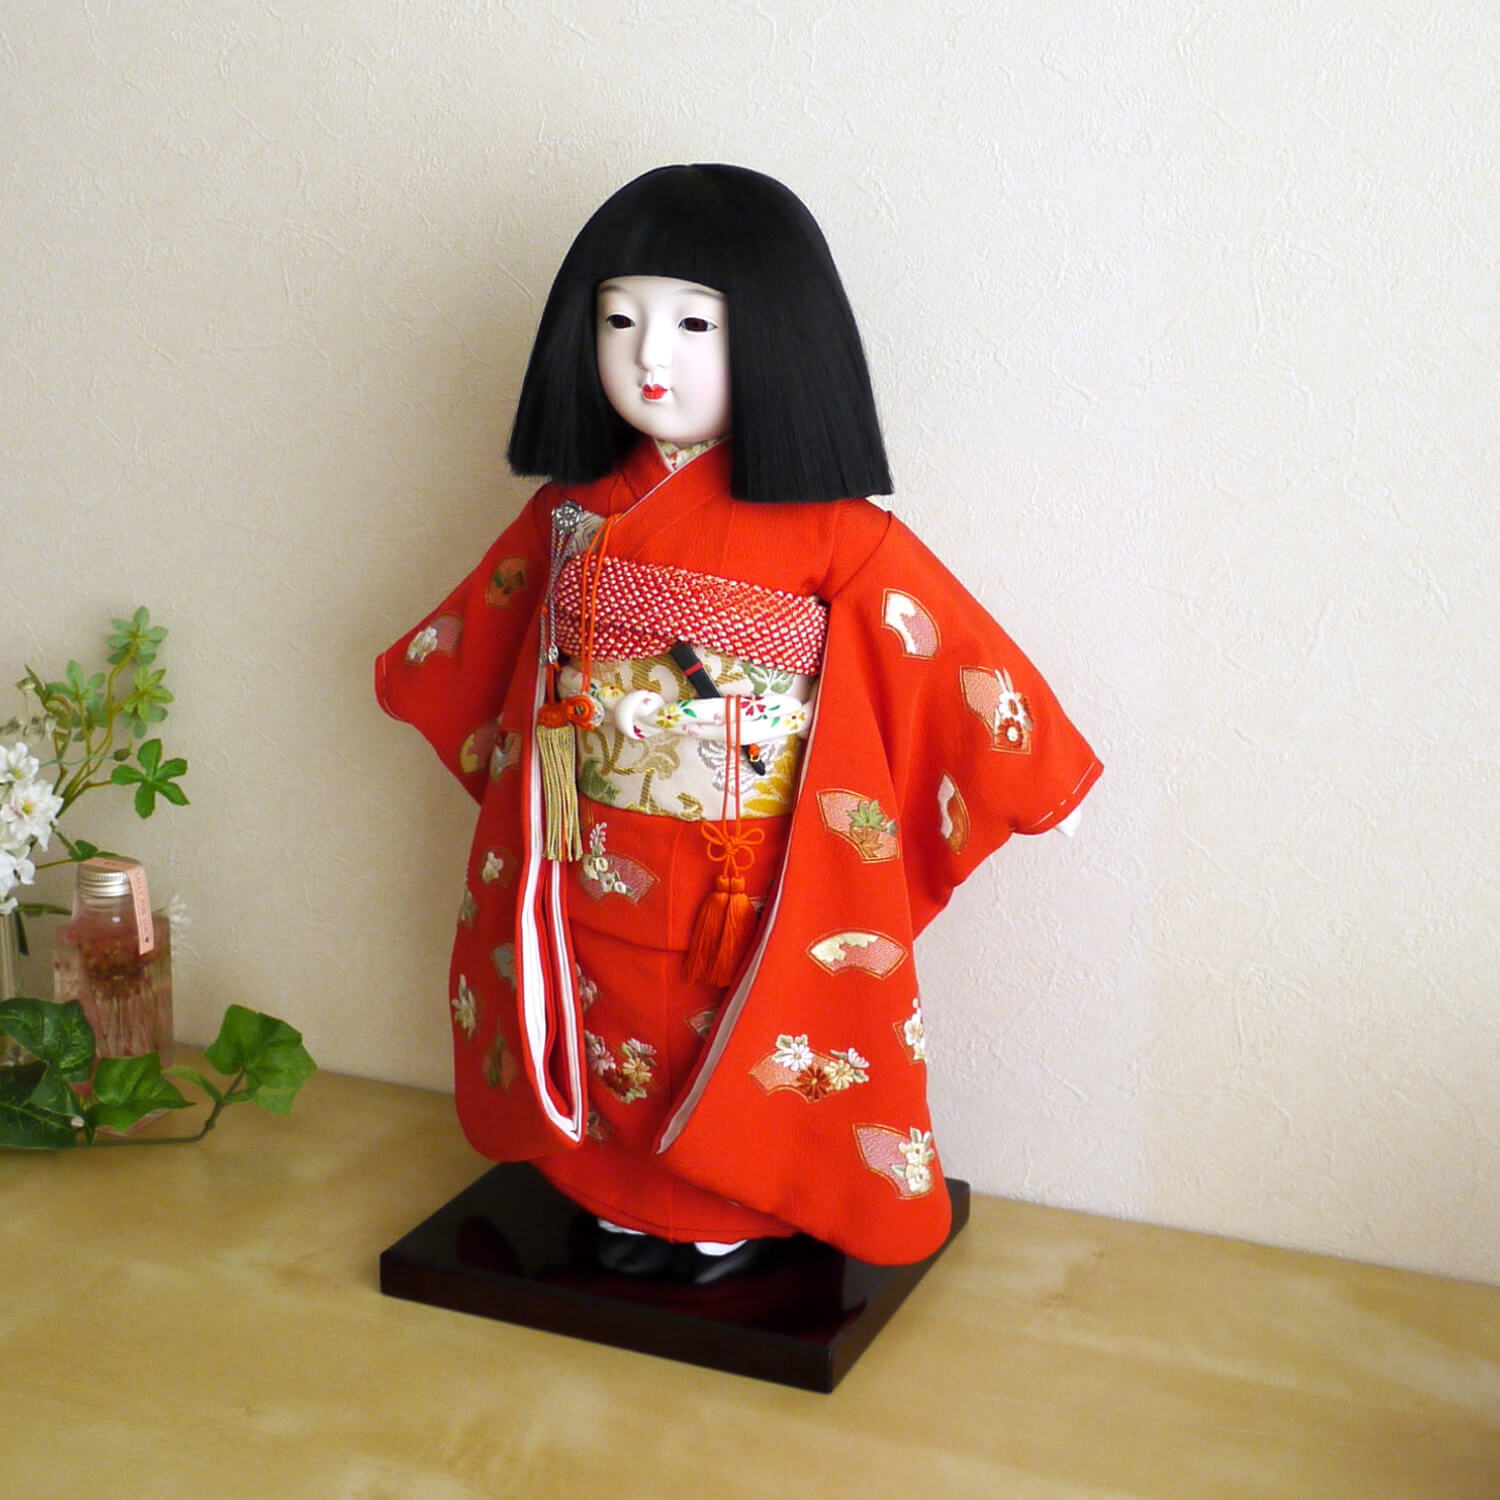 元賀章介作 12号(尺二)正絹手刺繍 扇面に小花 赤色 台 市松人形 女の子